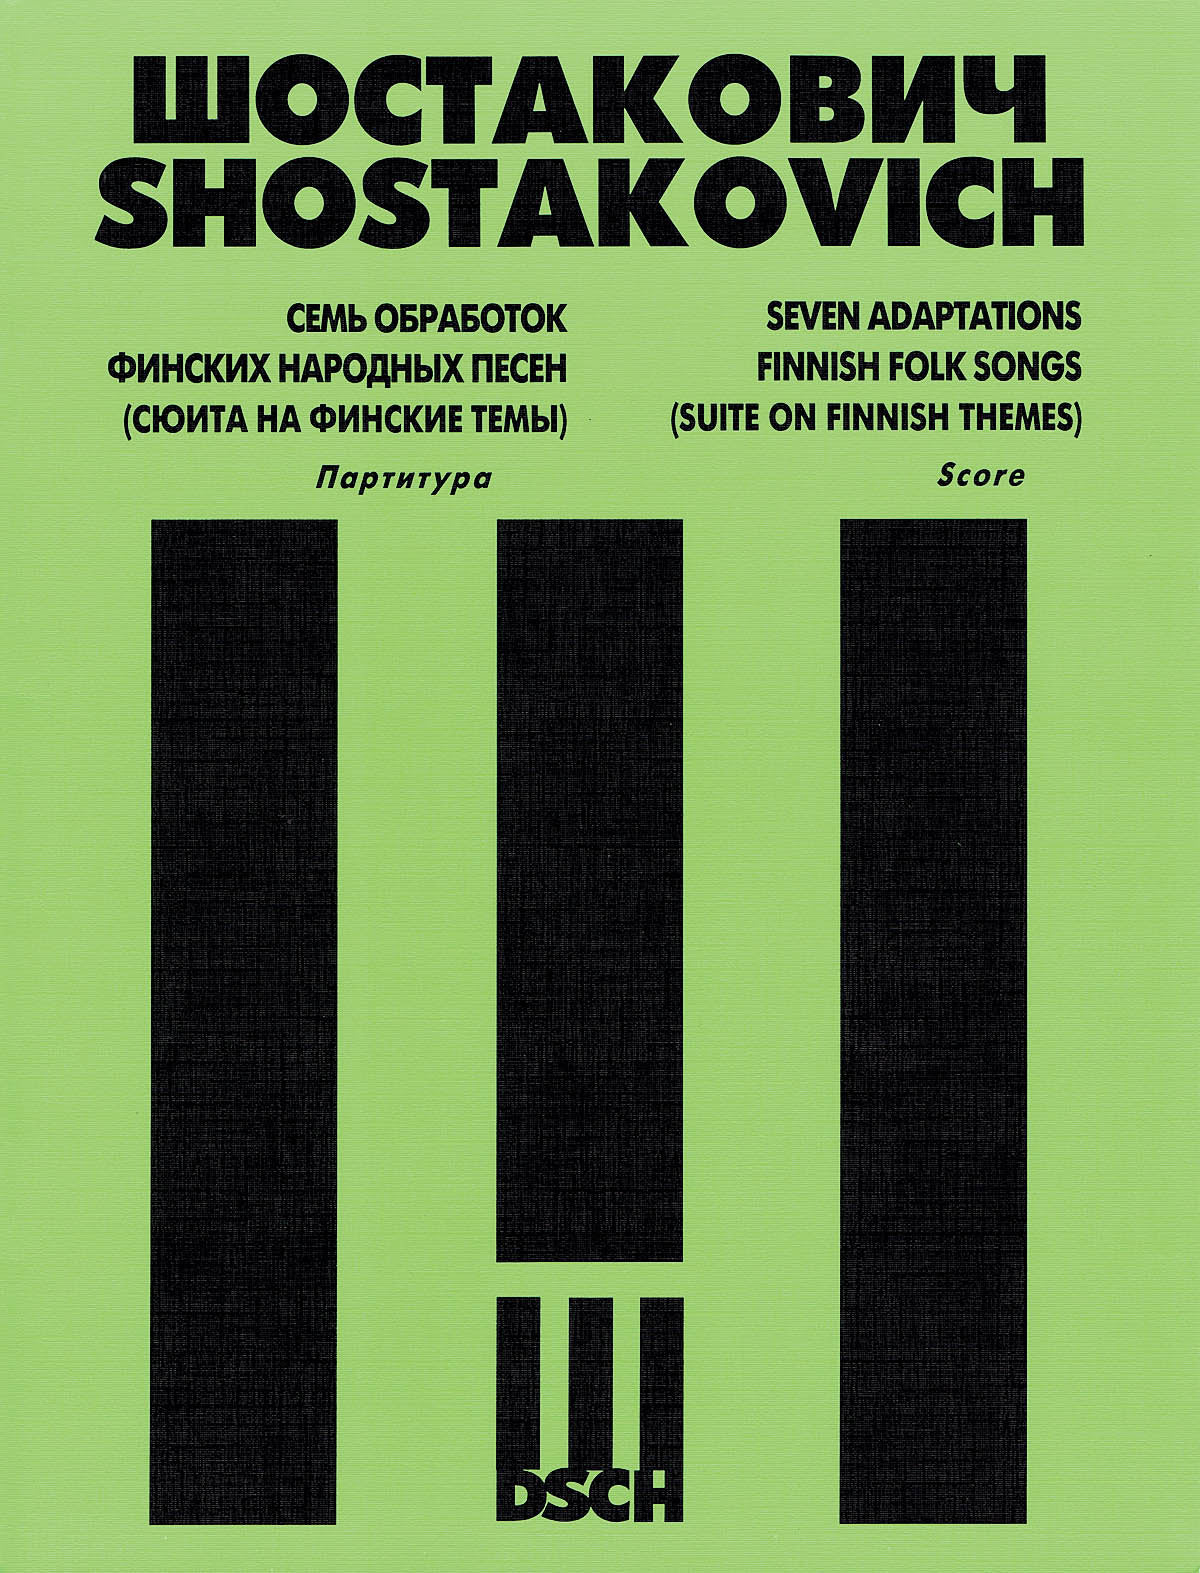 Shostakovich: 7 Arrangements of Finnish Folk Songs